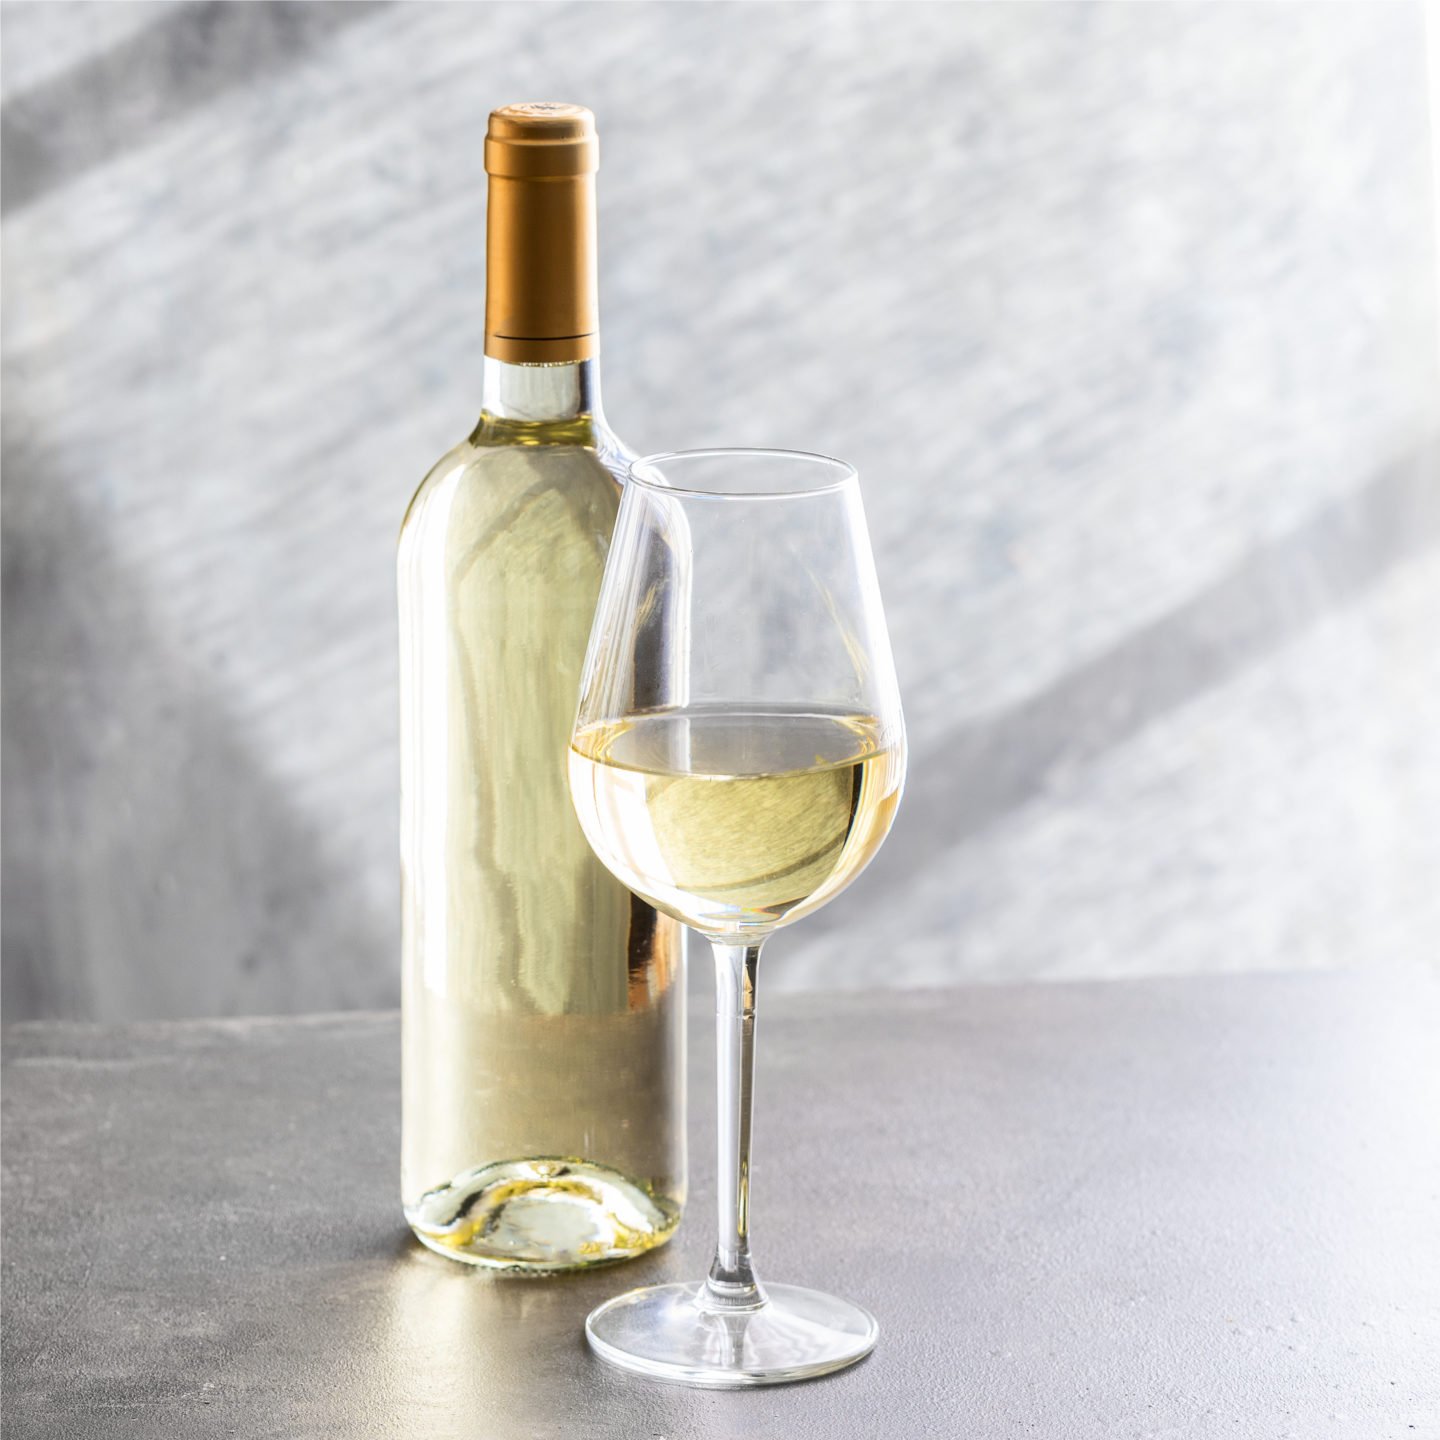 glass of white wine beside bottle